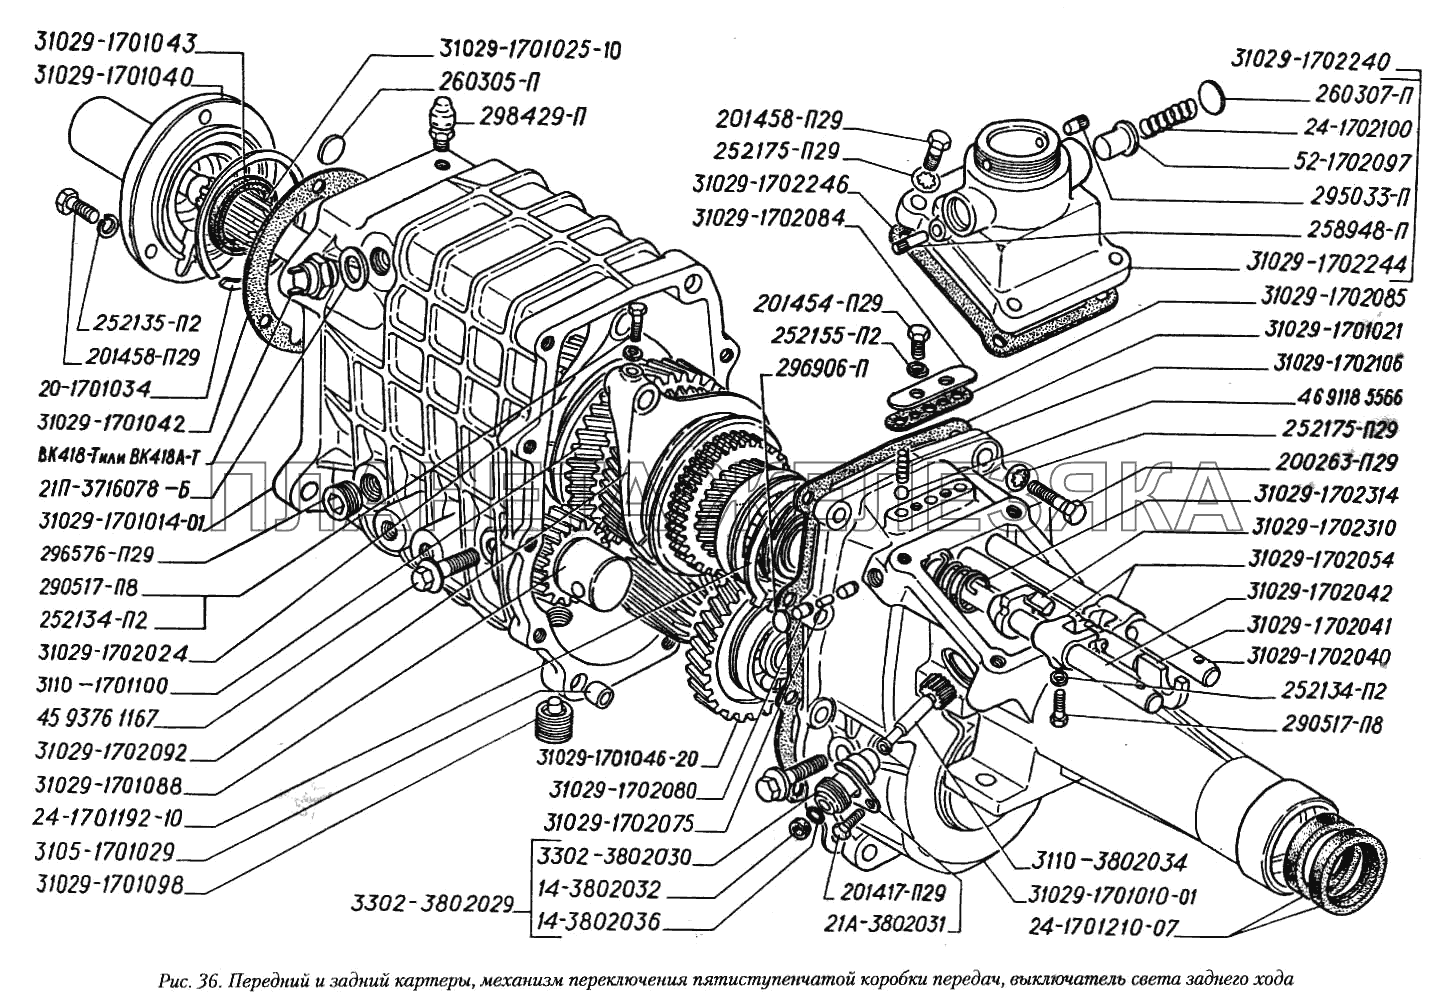 Передний и задний картеры, механизм переключения пятиступенчатой коробки передач, выключатель света заднего хода ГАЗ-3110